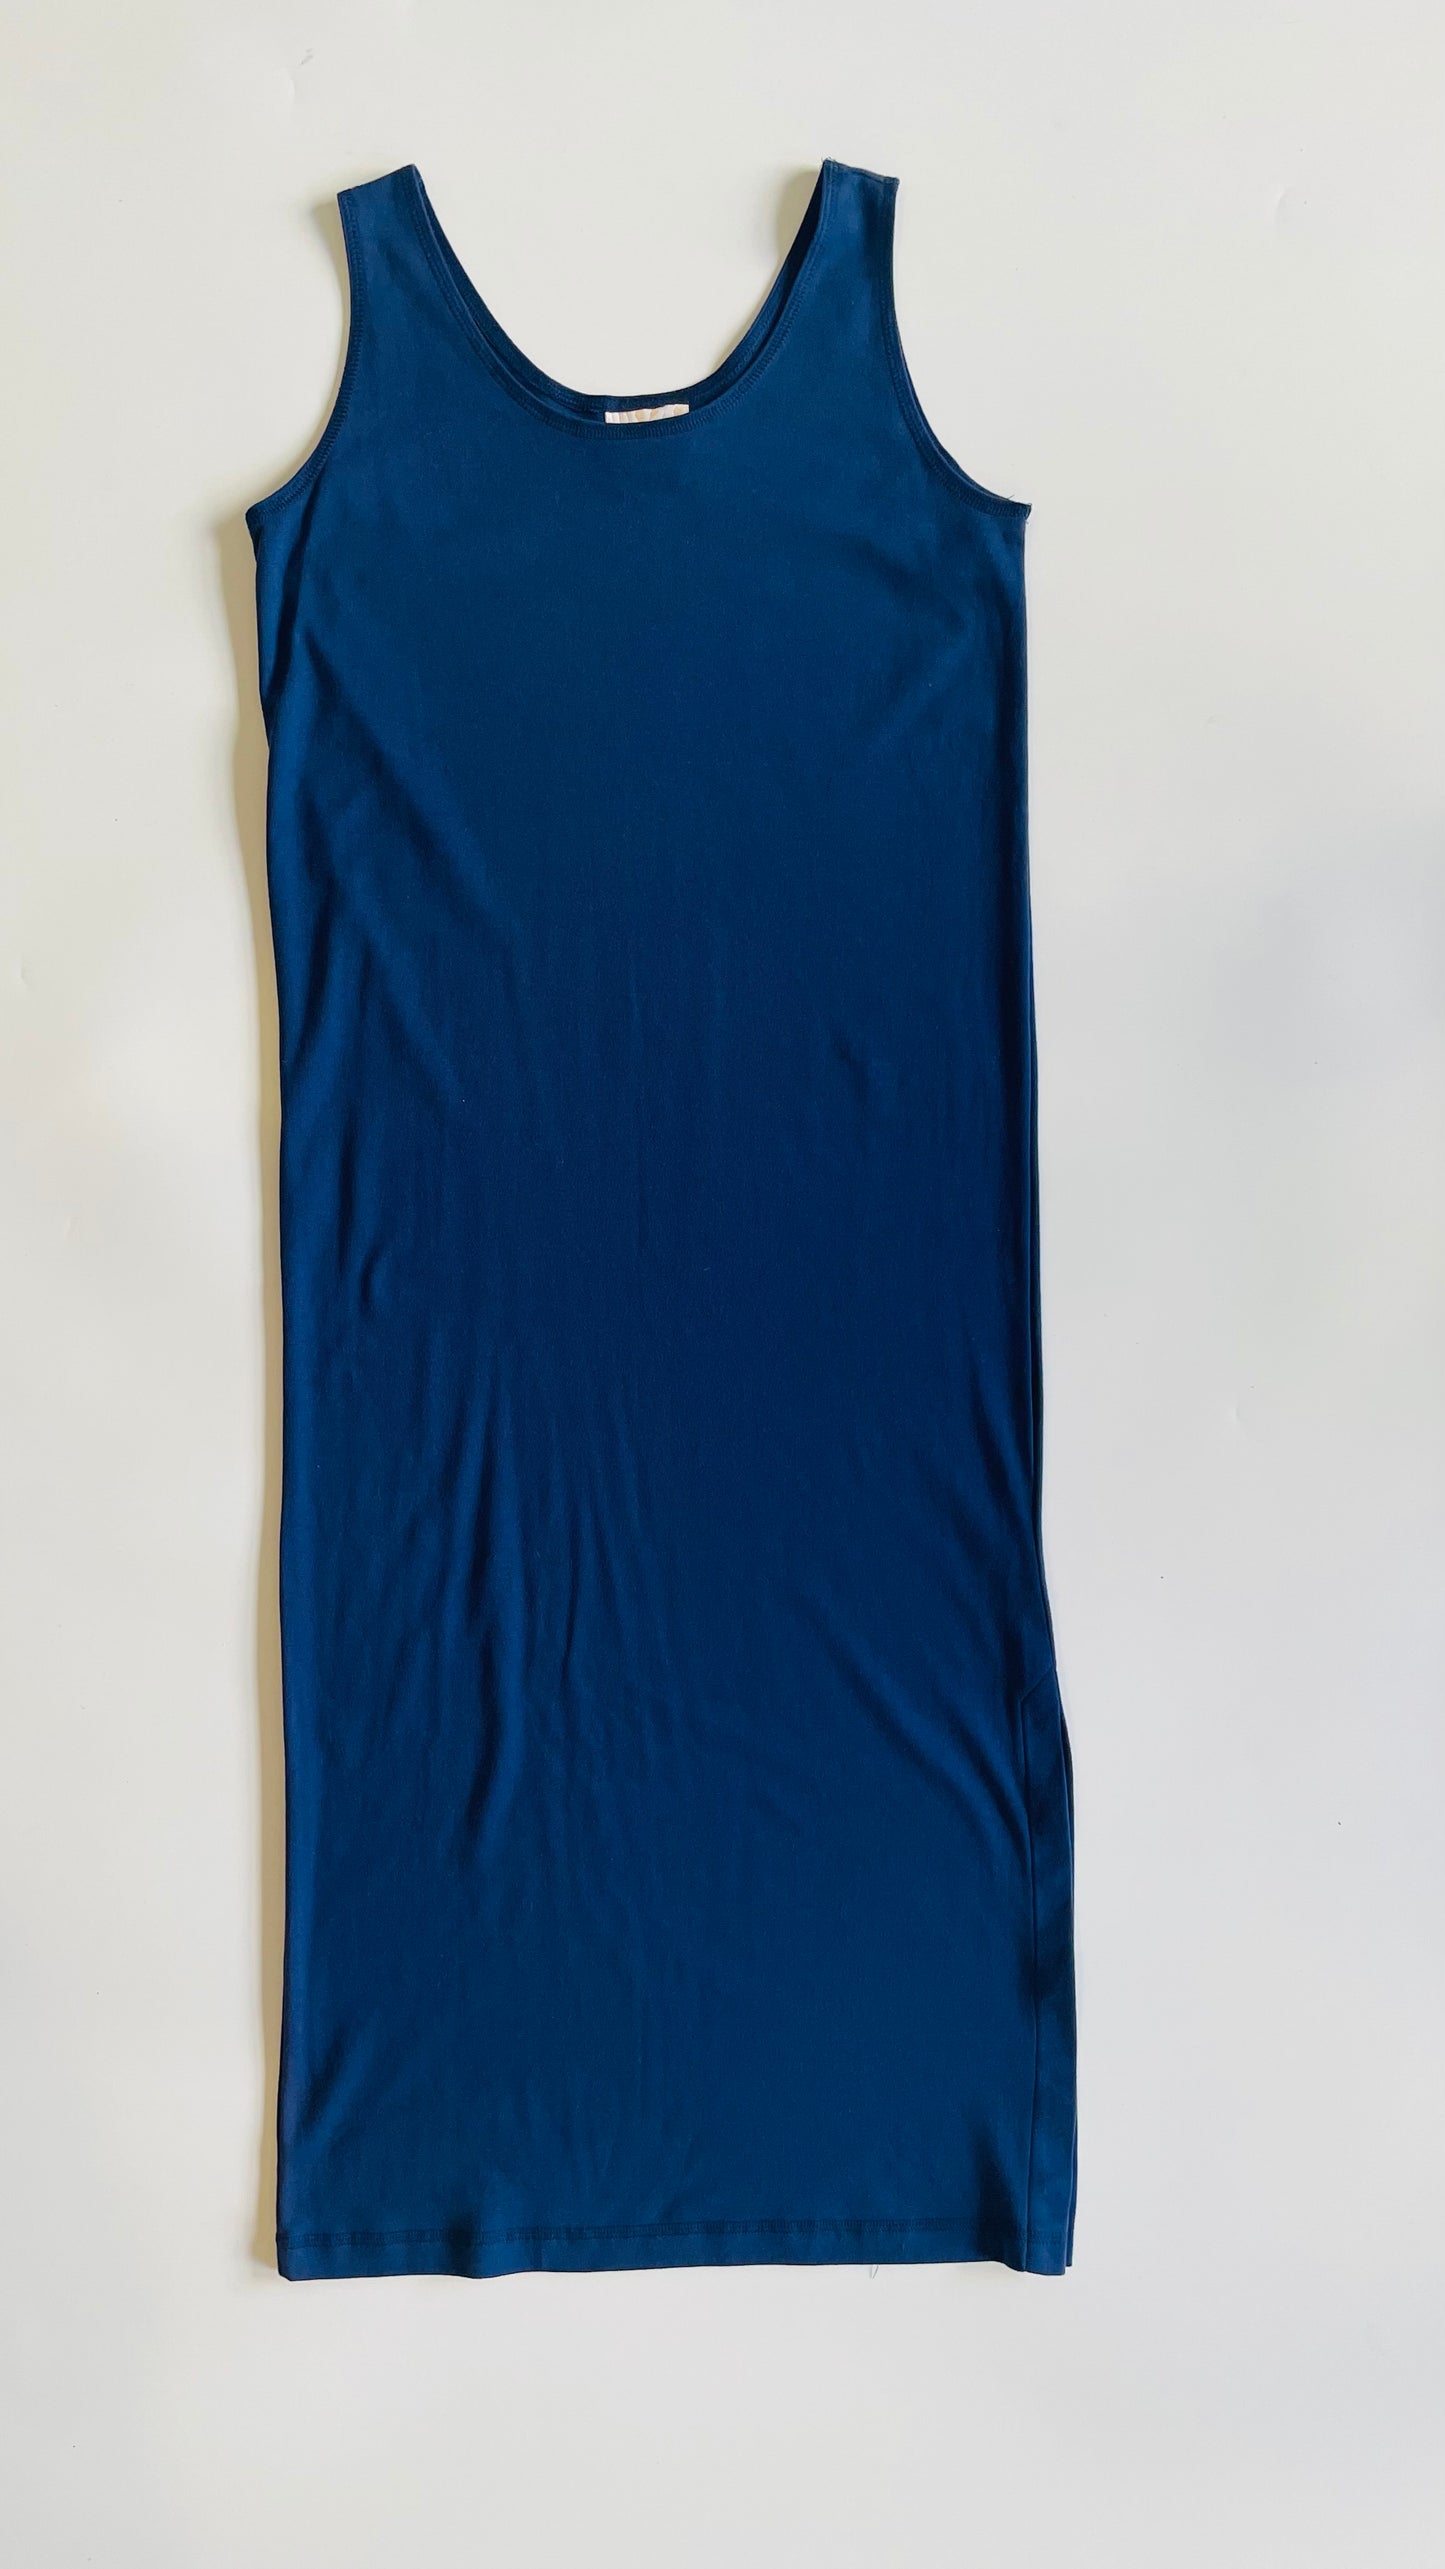 Vintage 90s blue maxi dress - Size M